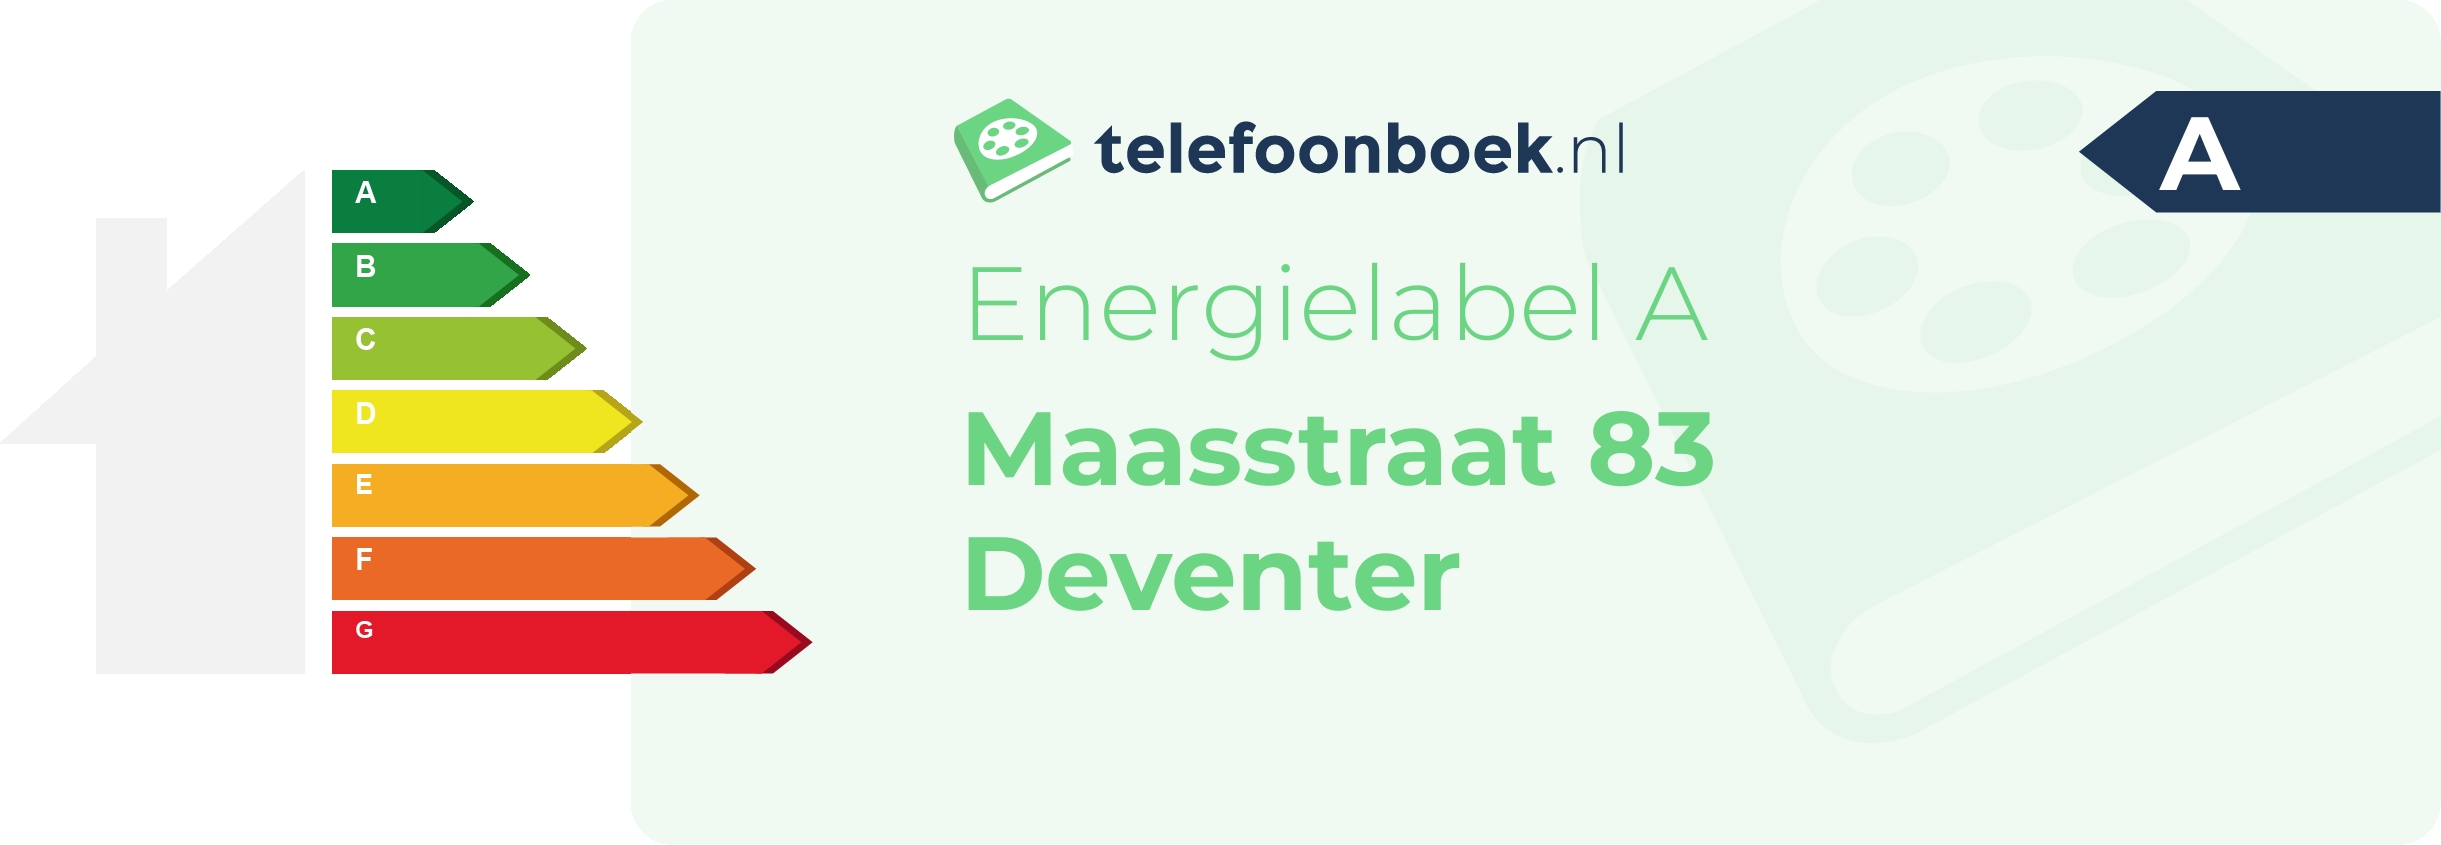 Energielabel Maasstraat 83 Deventer